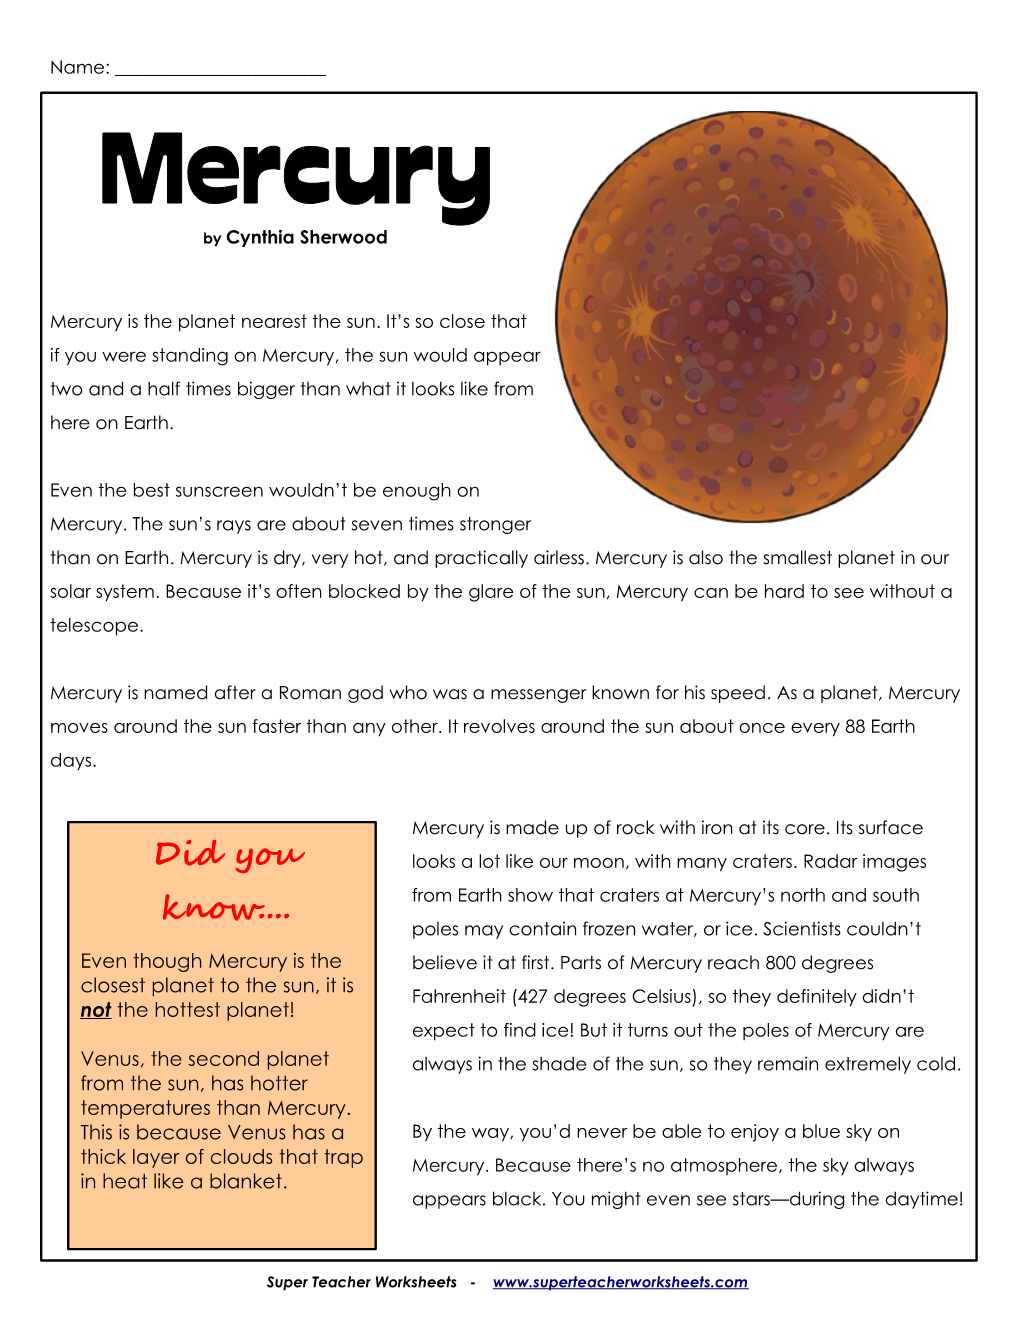 Mercury by Cynthia Sherwood